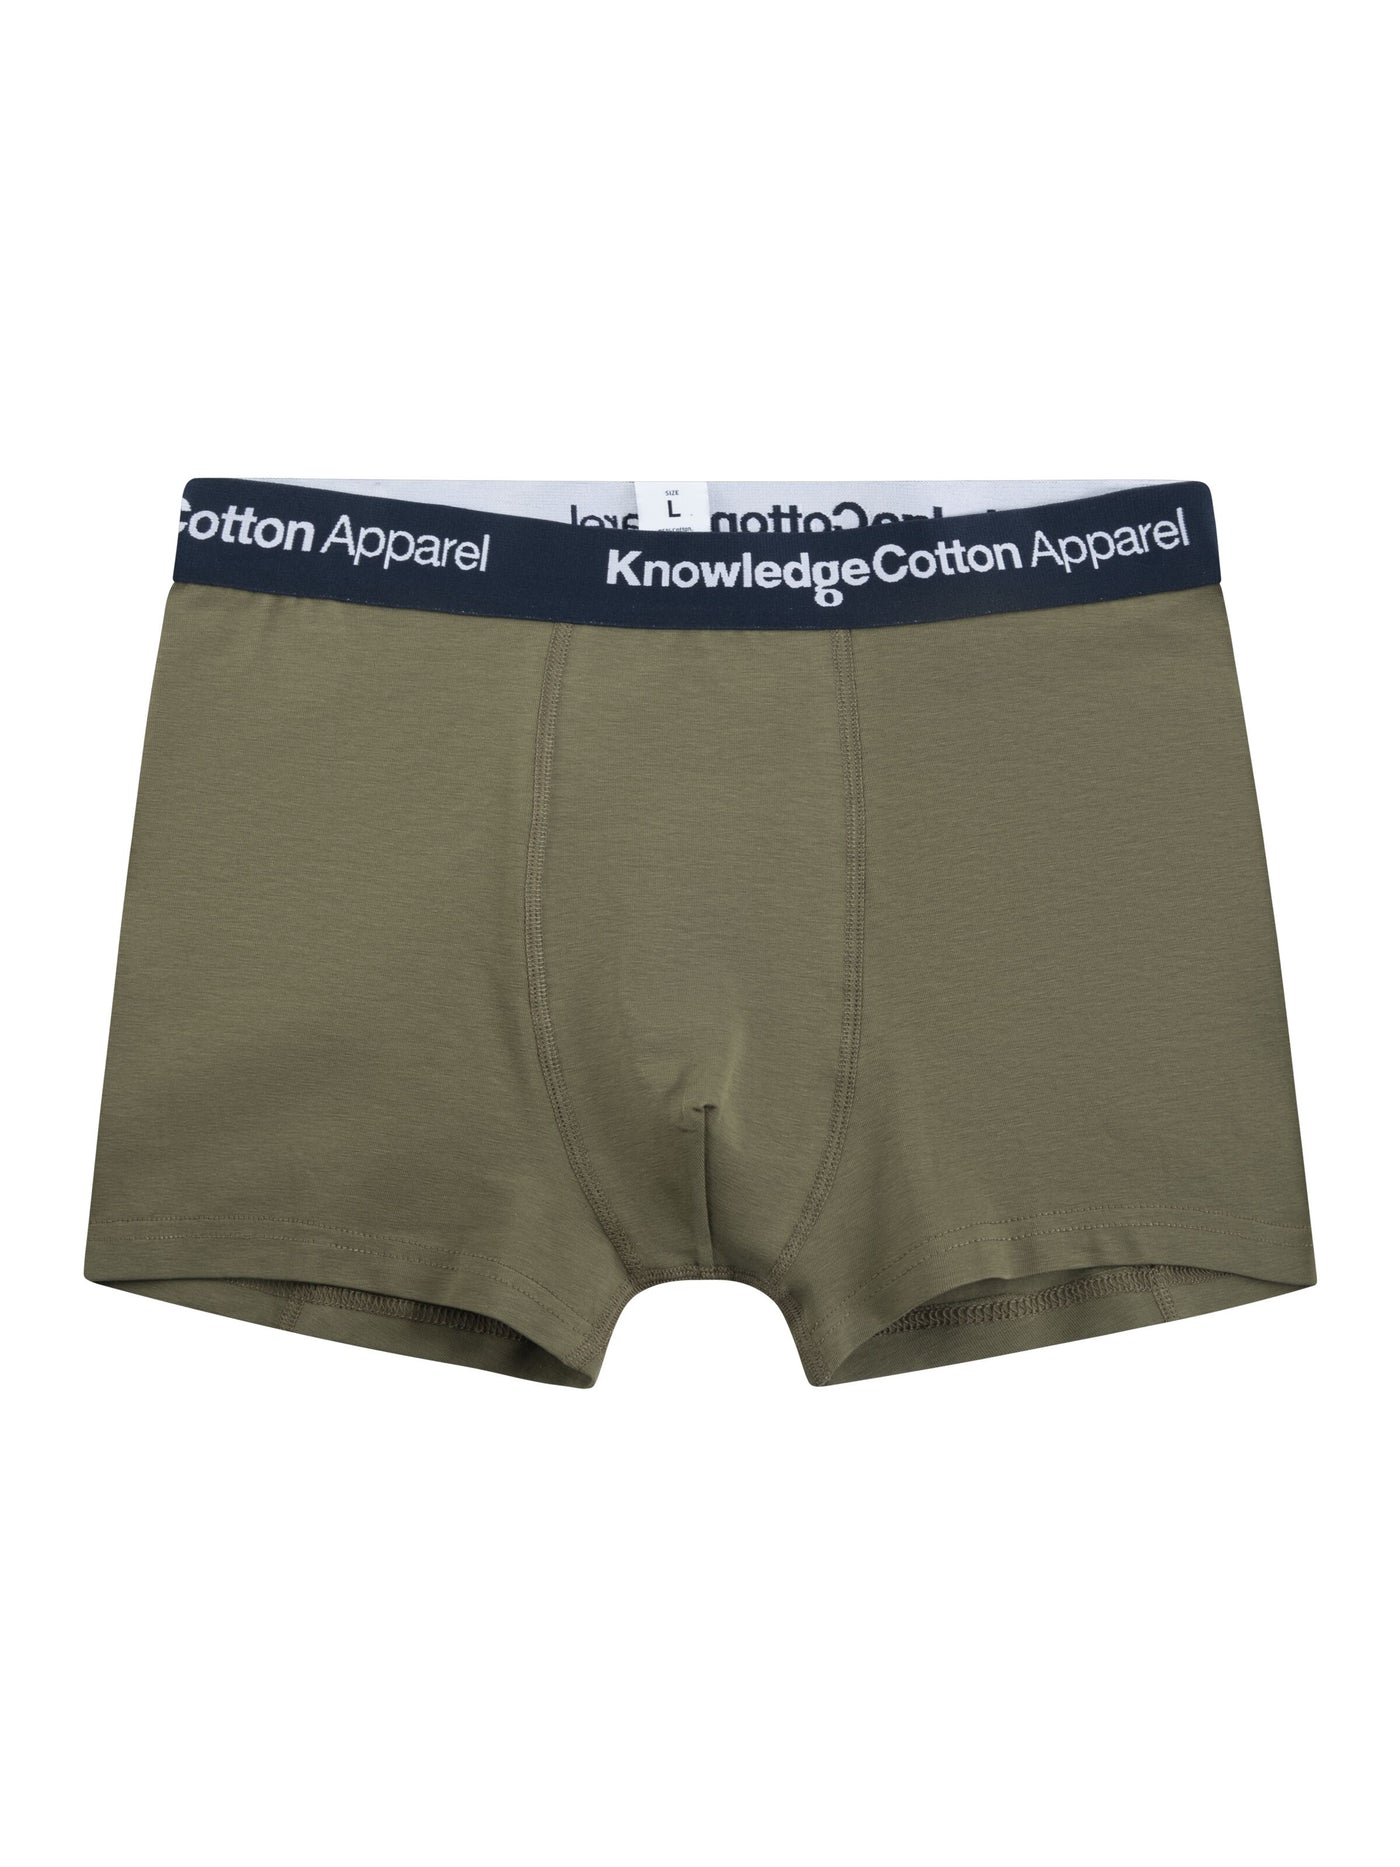 2-pack Boxer Briefs Underwear Trunks Dark Olive